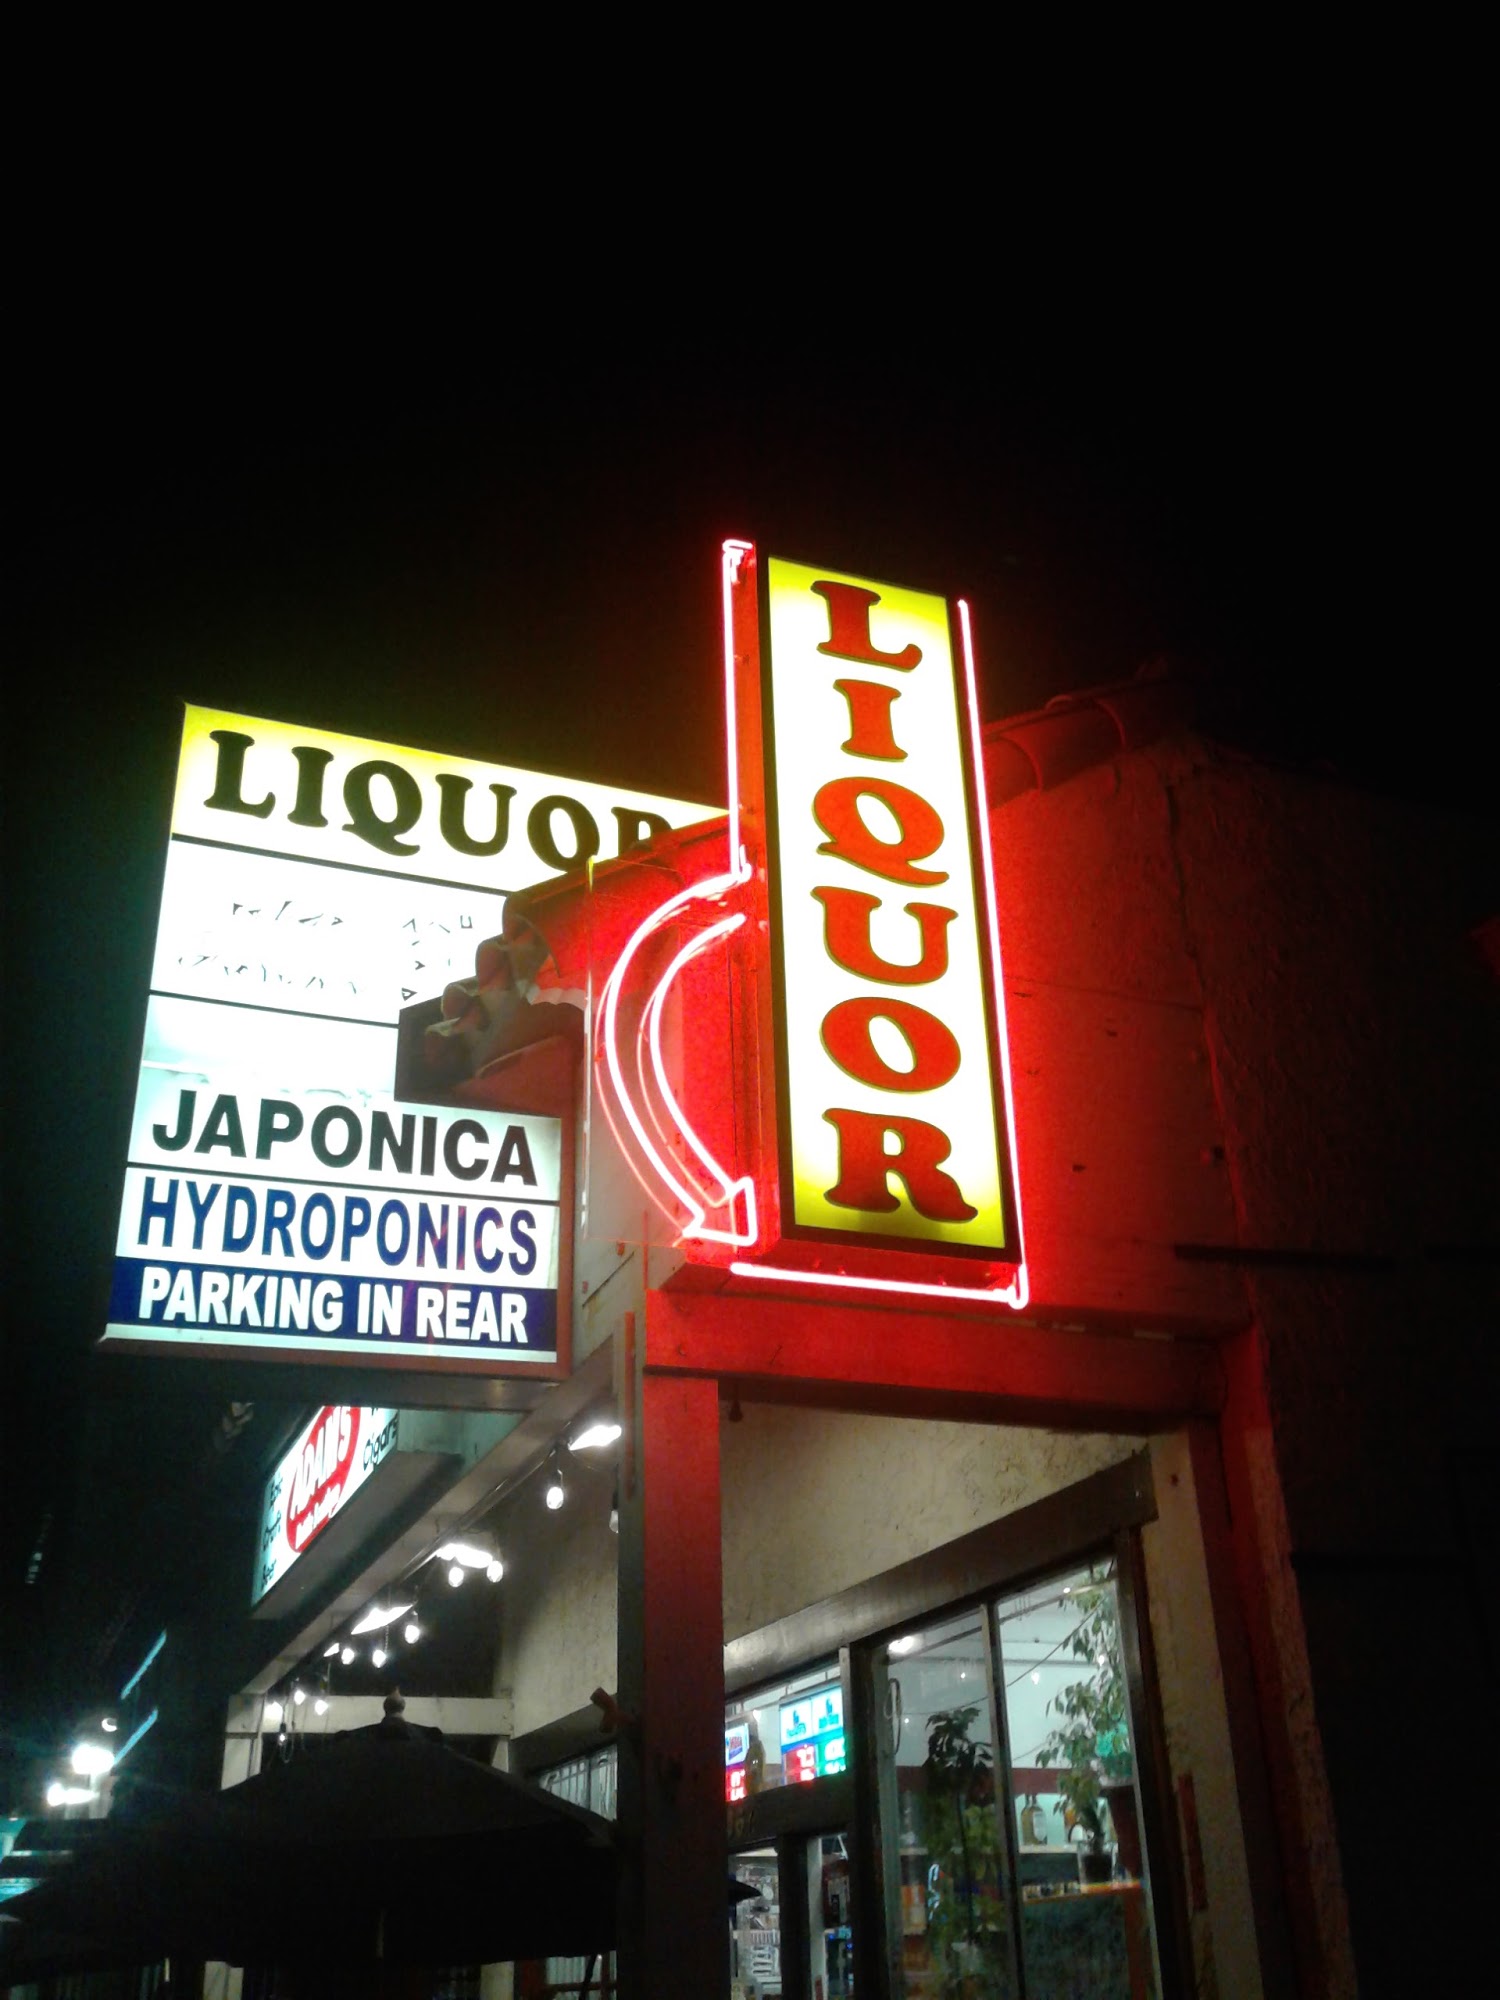 Adam's Liquor & Bottle Shop